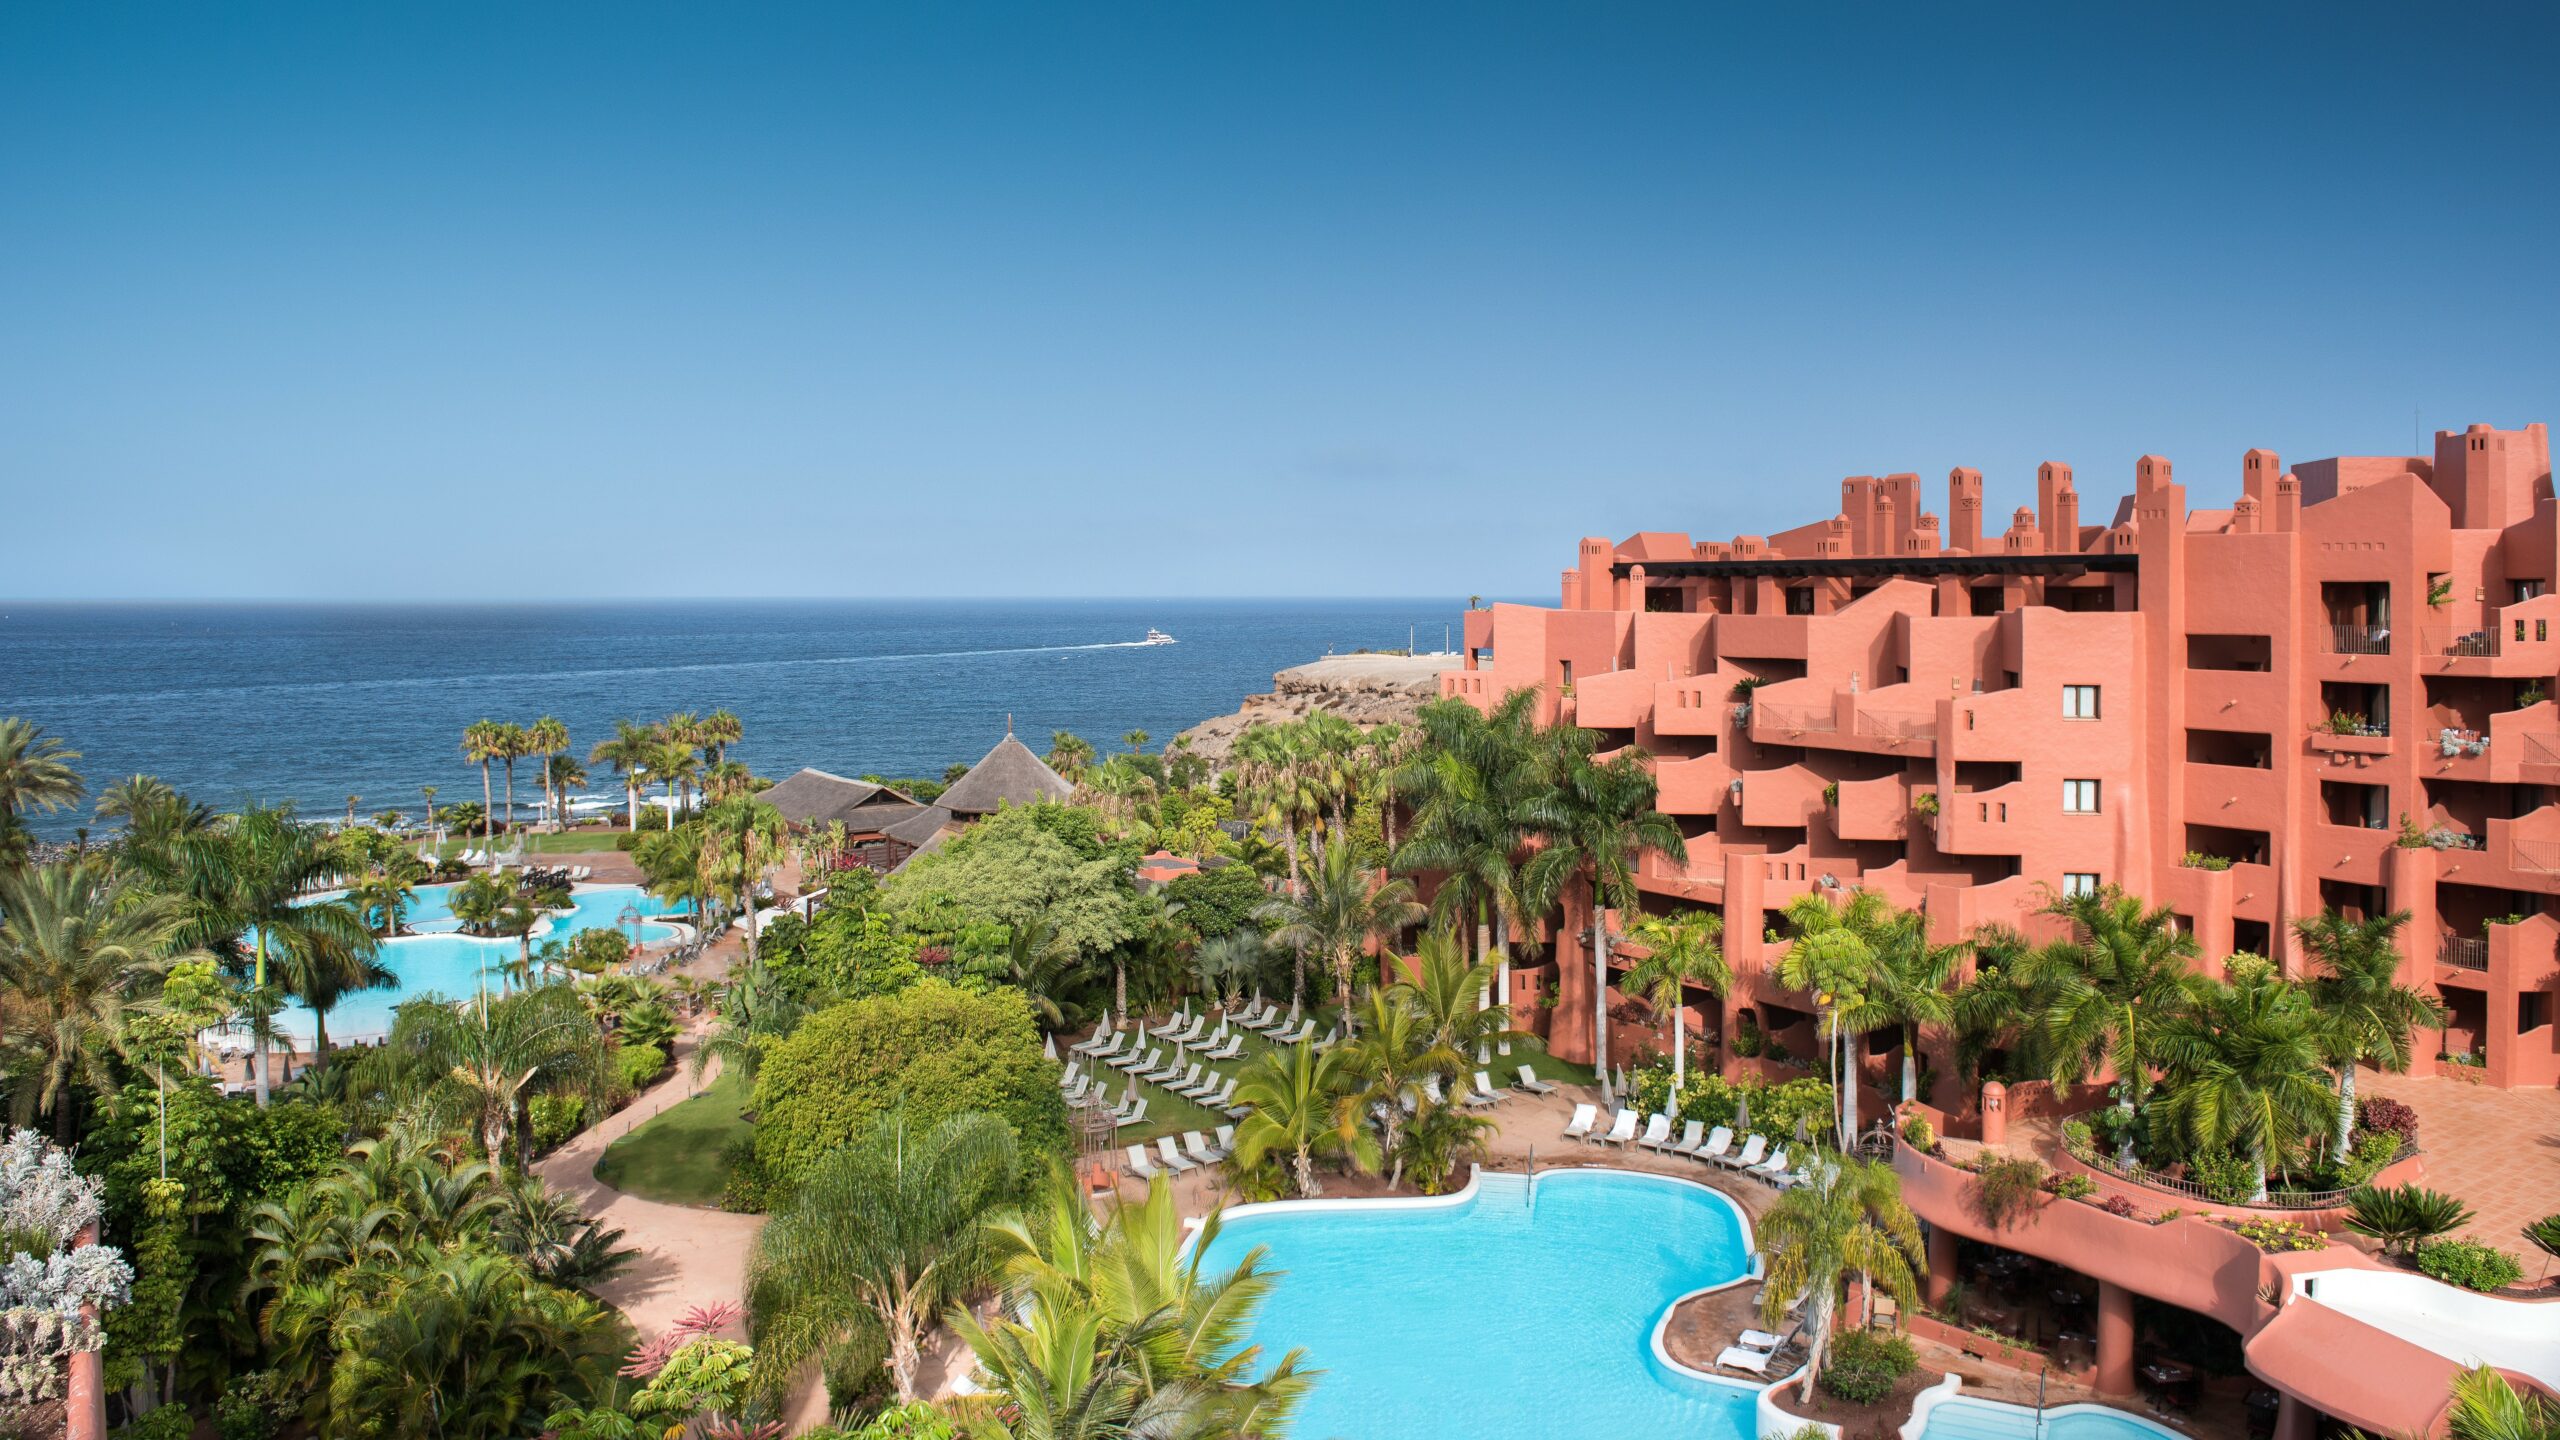 Tivoli Hotels & Resorts estreia na Espanha com um resort de luxo em Tenerife, o Tivoli La Caleta